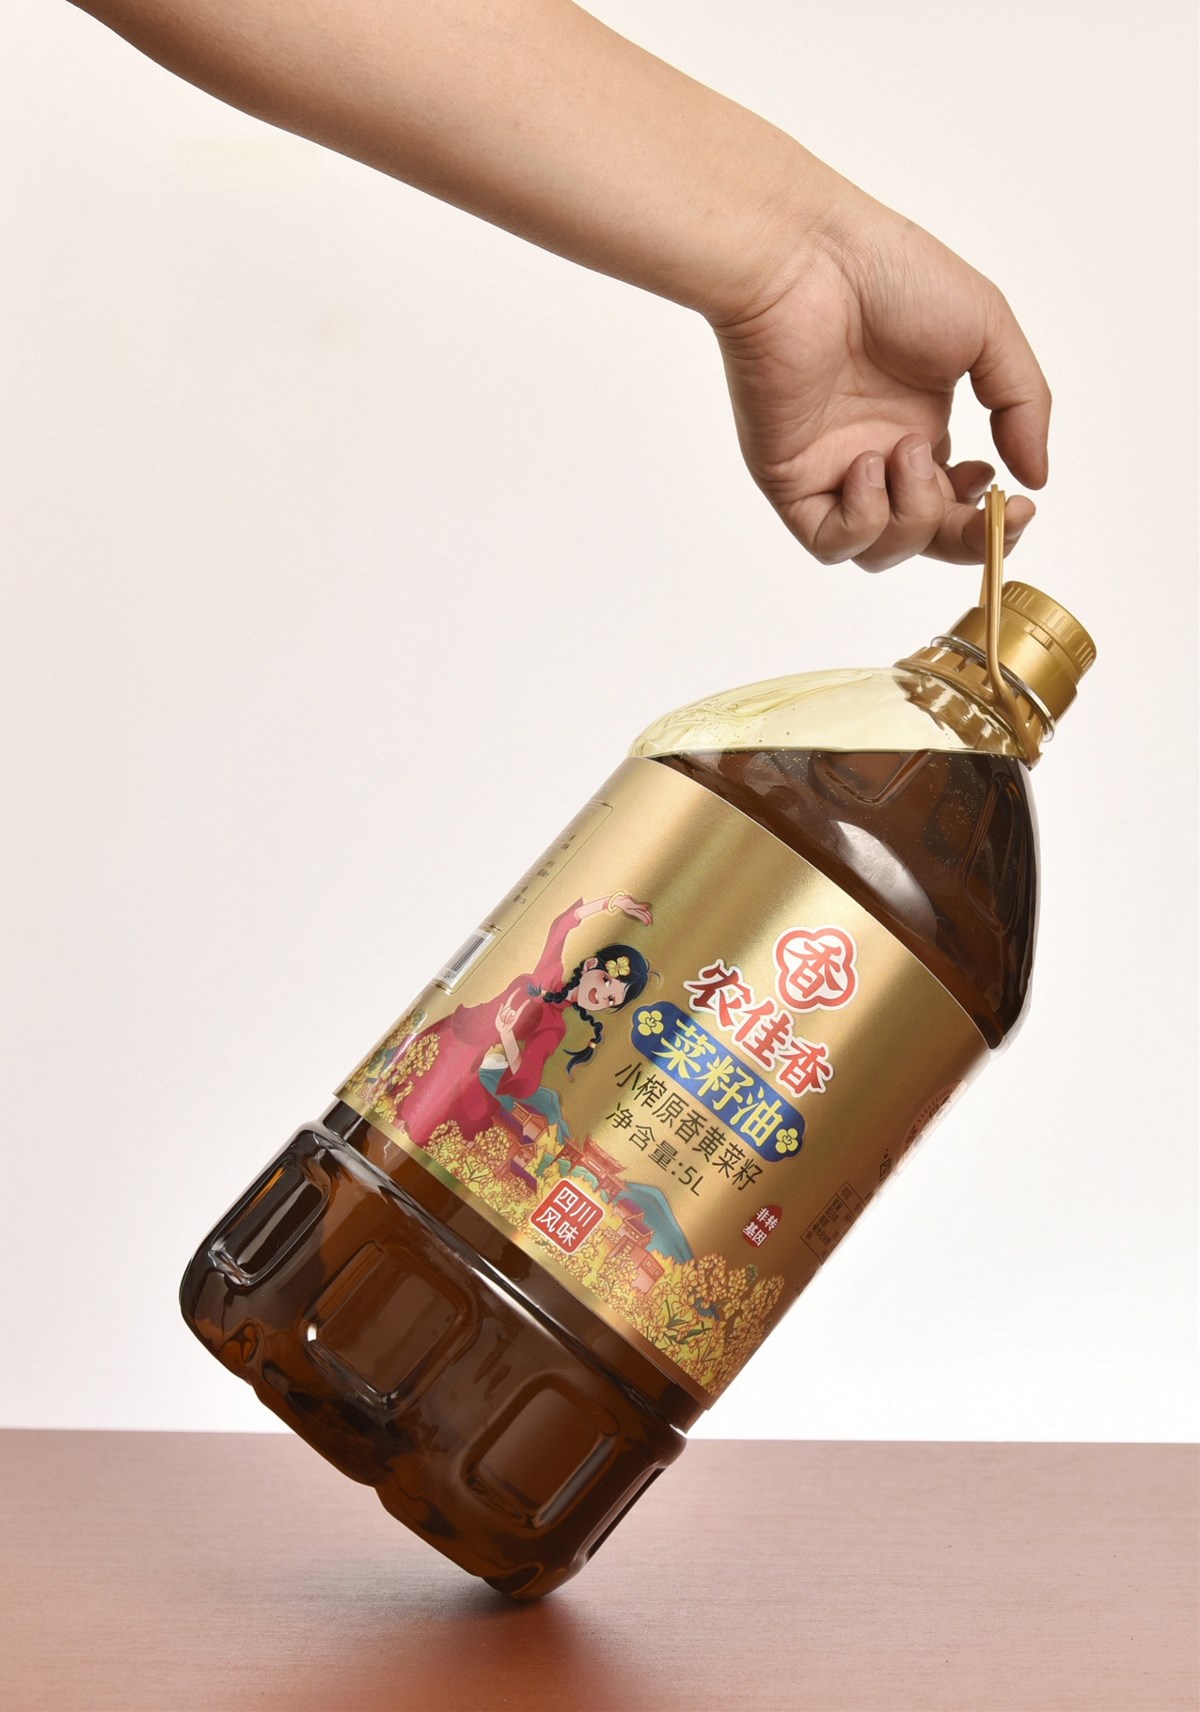 农佳香品牌丨菜籽油包装设计 丨 四川风味